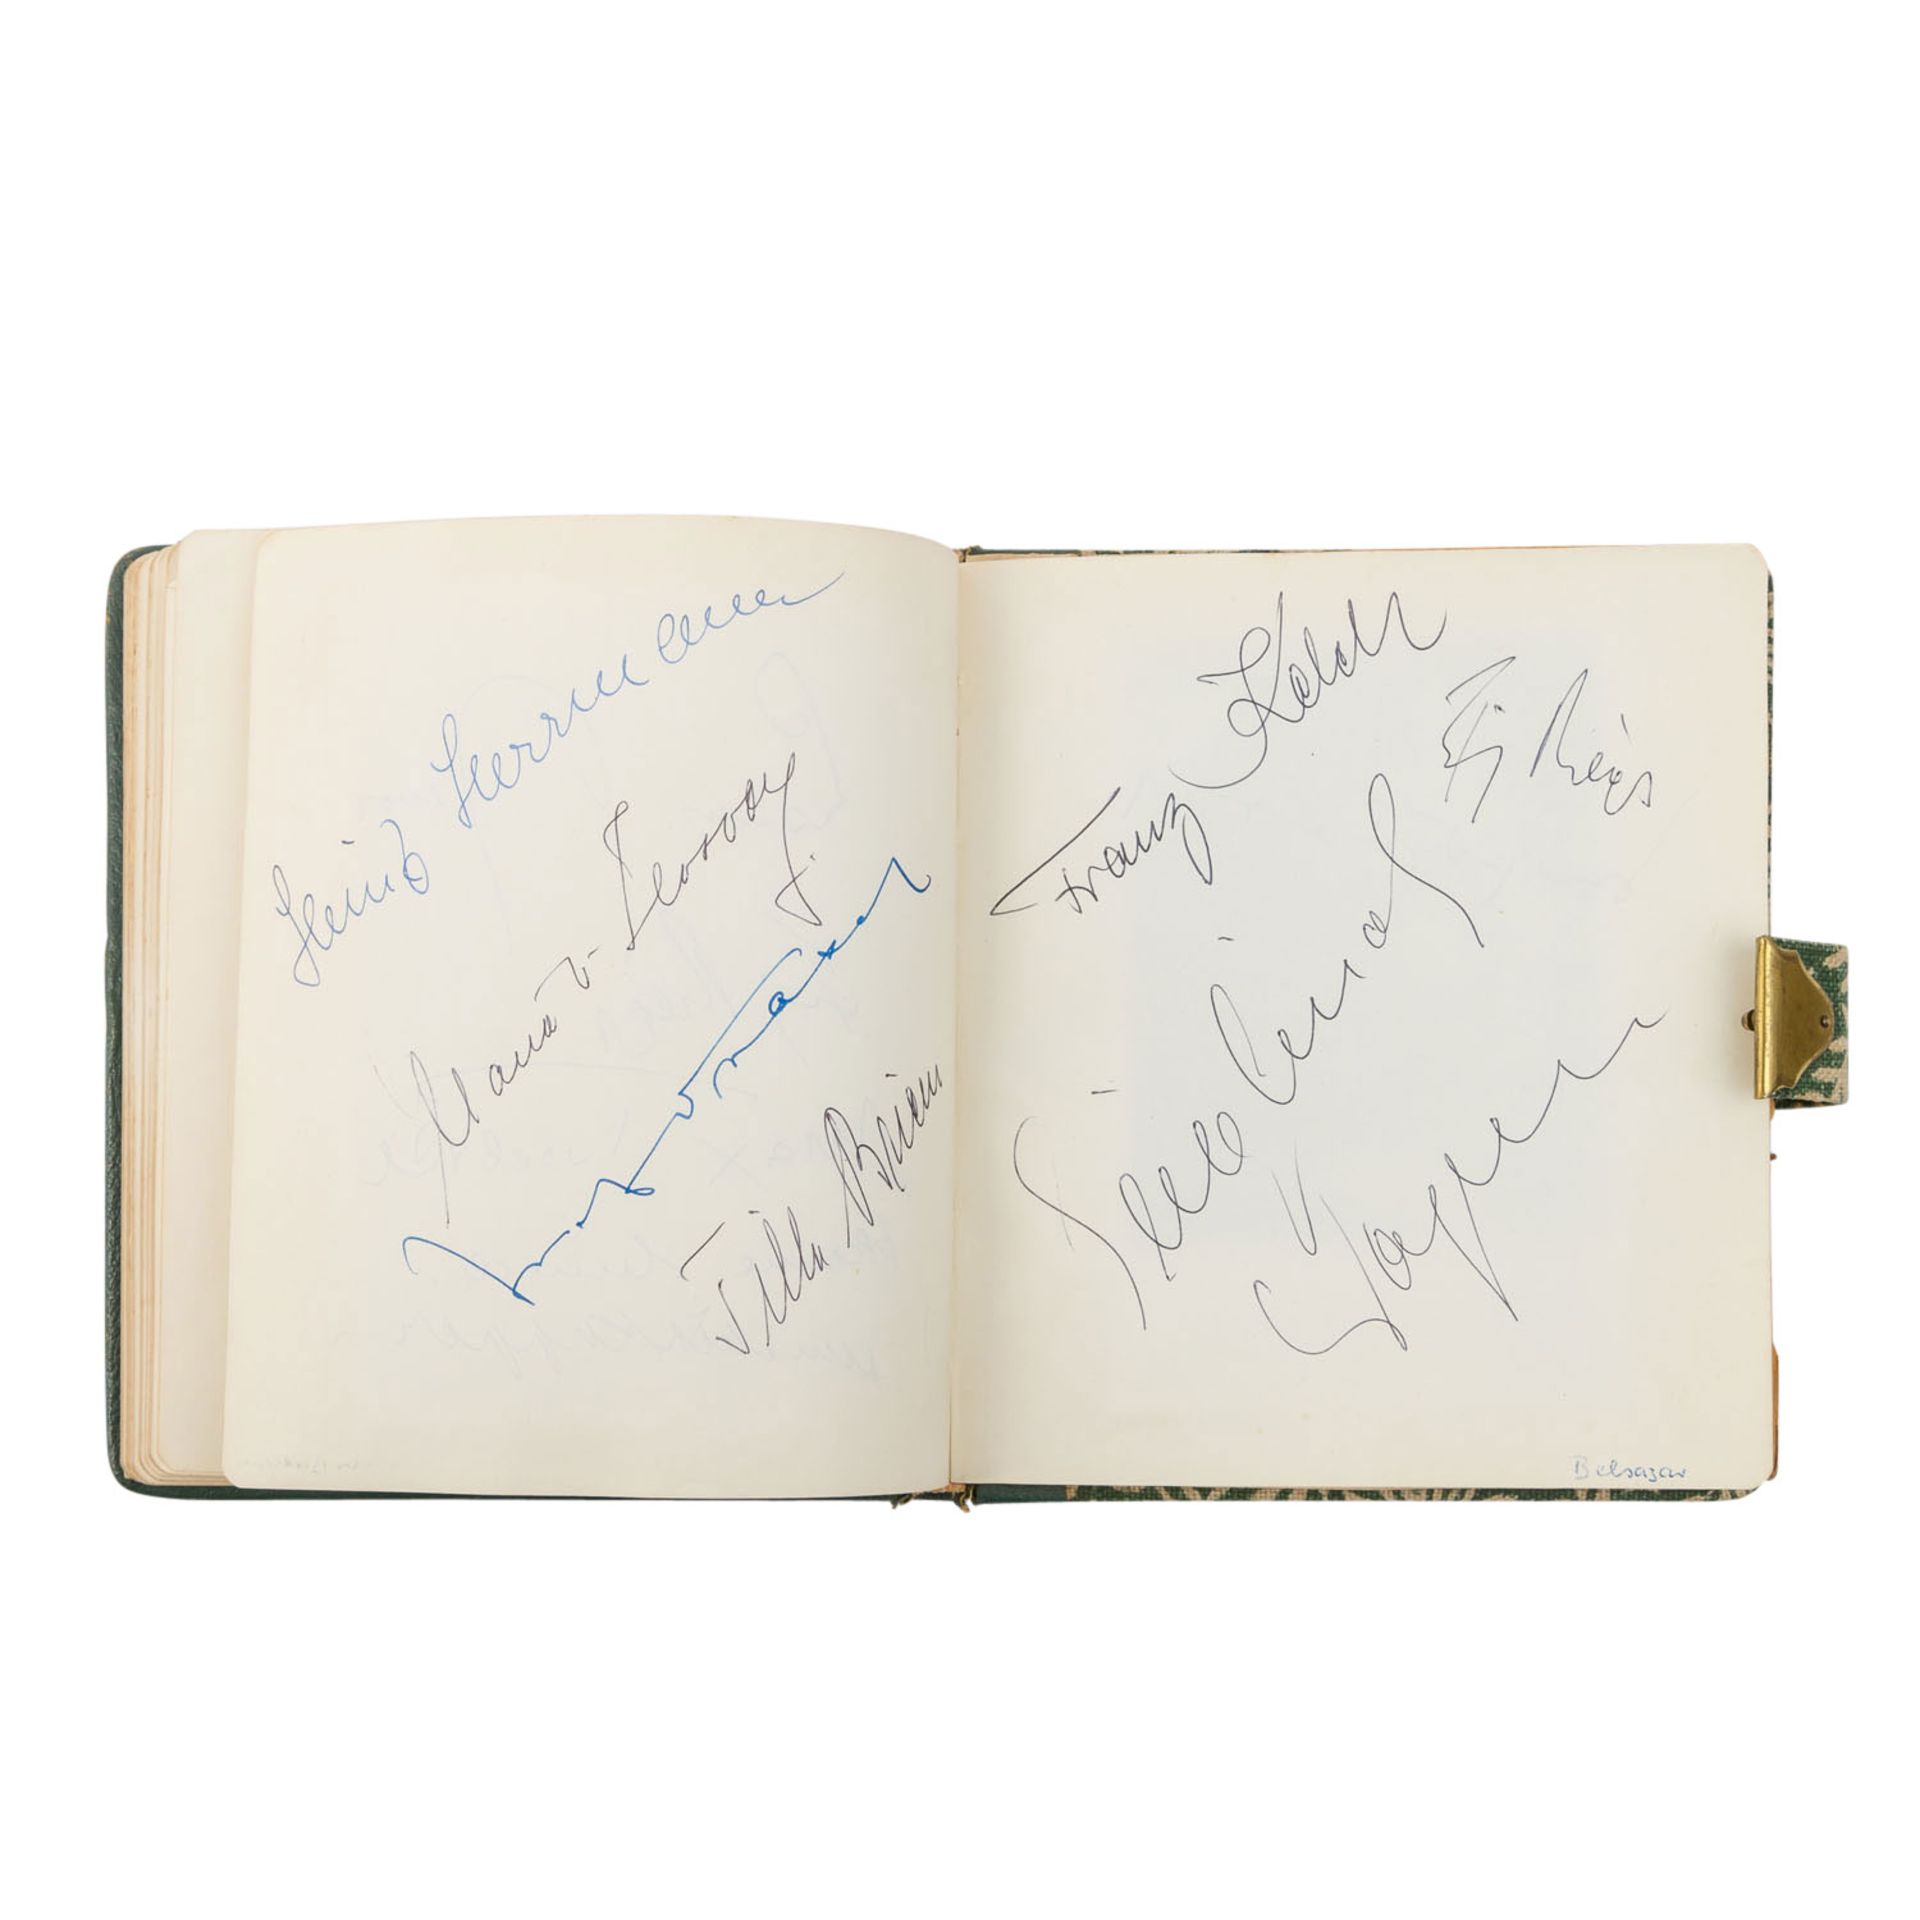 Autographen - Poesiealbum München der 1950-er Jahre mit - Bild 7 aus 8